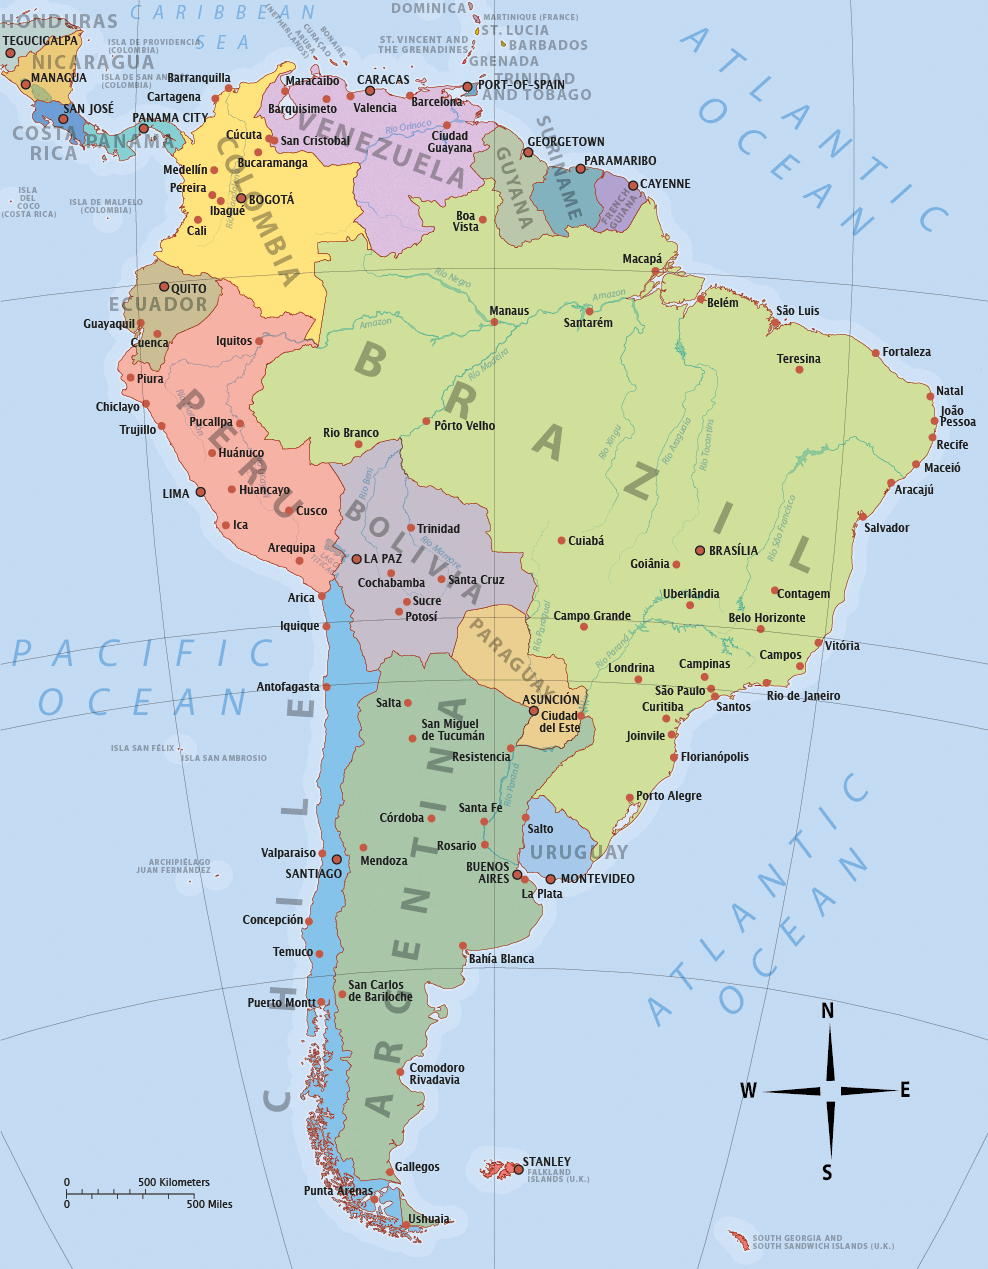 Karte von Mittelamerika